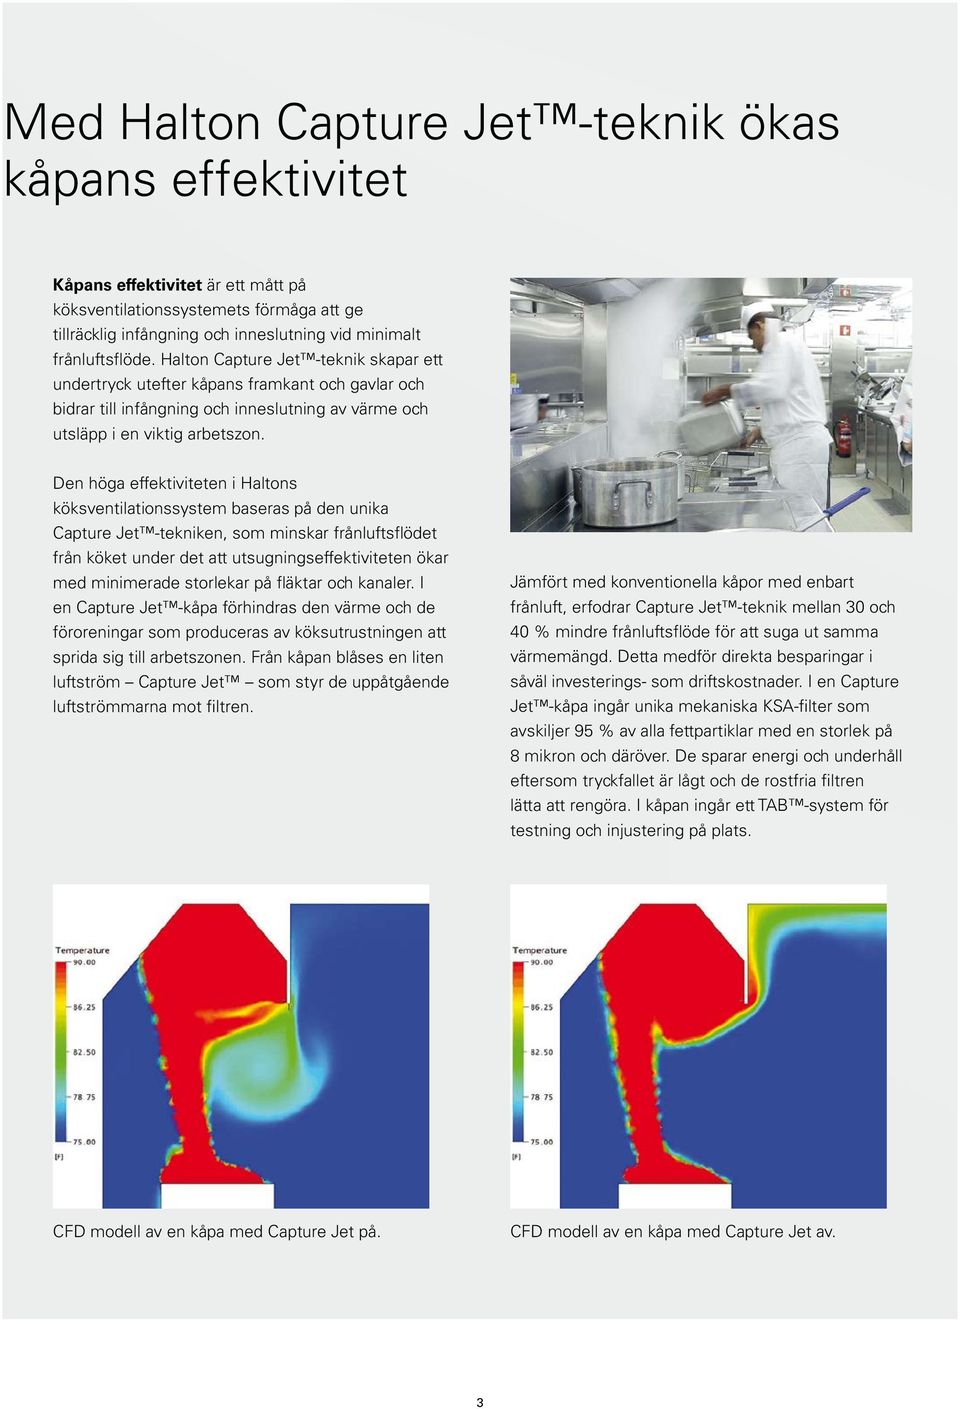 Den höga effektiviteten i Haltons köksventilationssystem baseras på den unika Capture Jet -tekniken, som minskar frånluftsflödet från köket under det att utsugningseffektiviteten ökar med minimerade